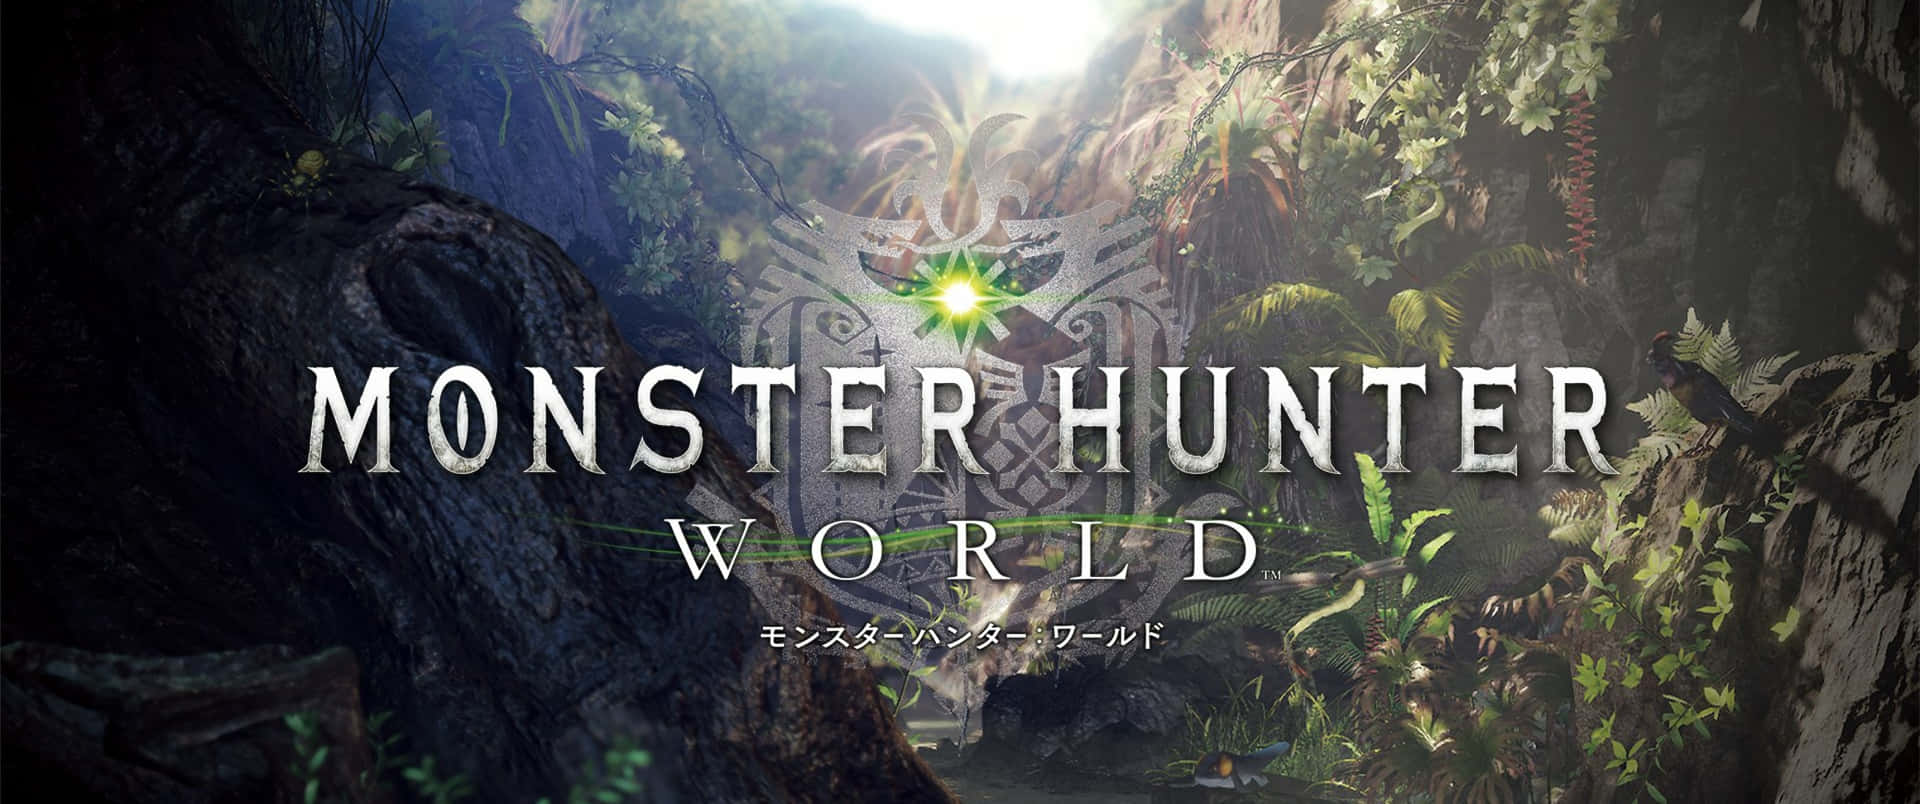 Sfondodi Monster Hunter World Con Copertina Del Gioco In Formato 3440x1440p